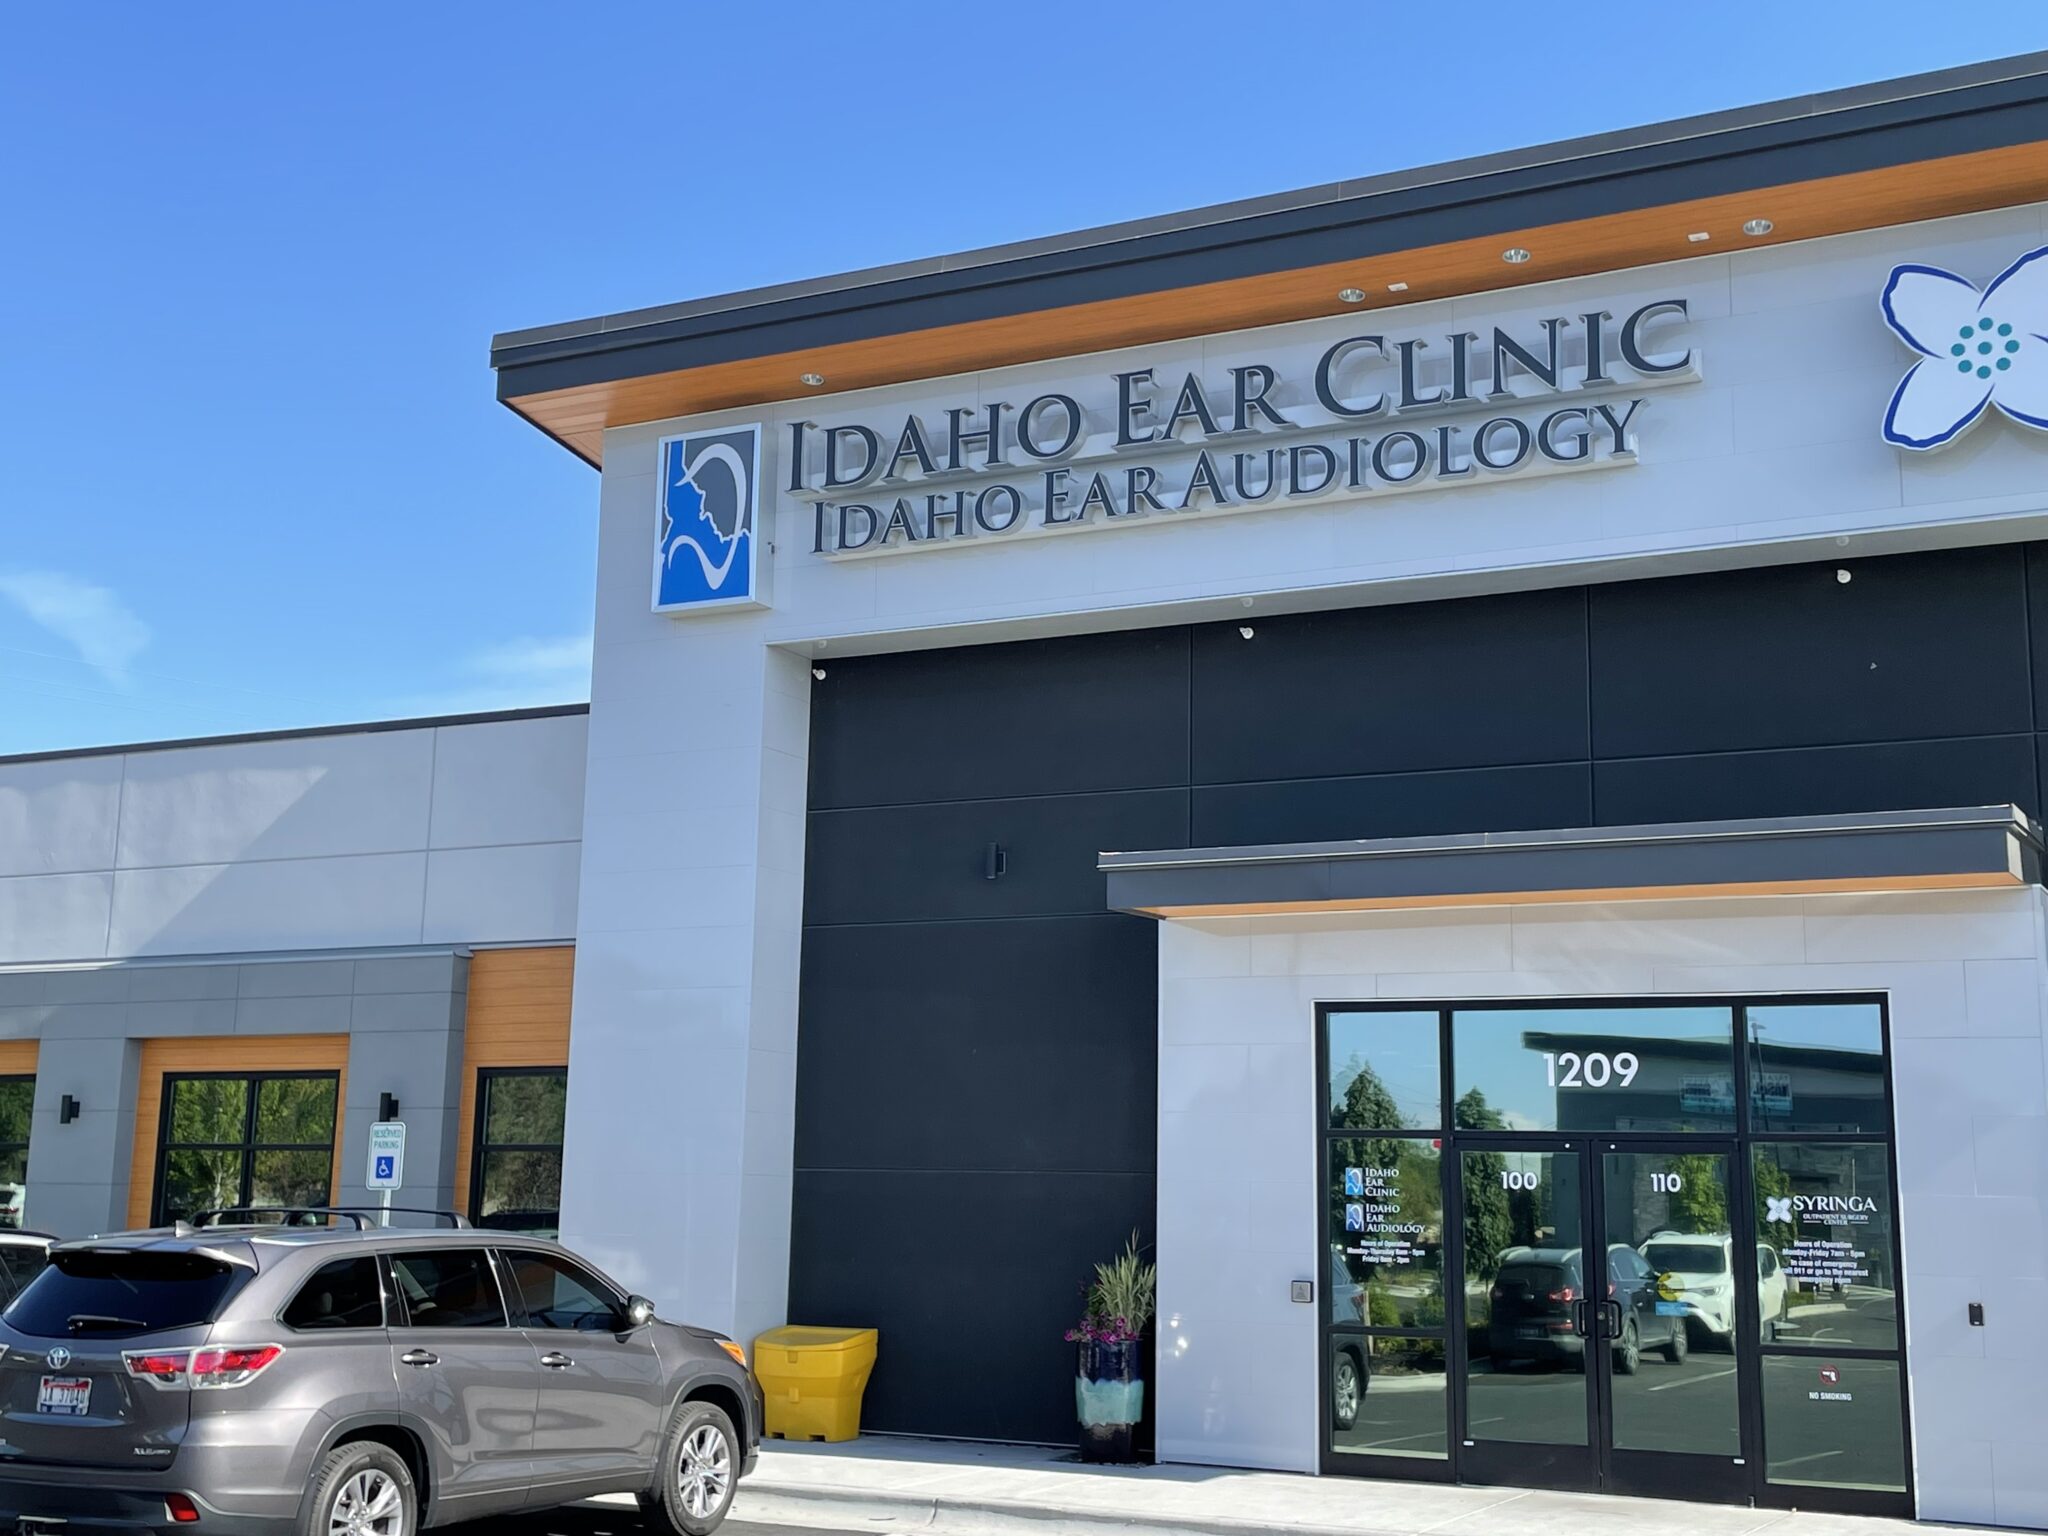 Window Treatments at the Idaho Ear Clinic